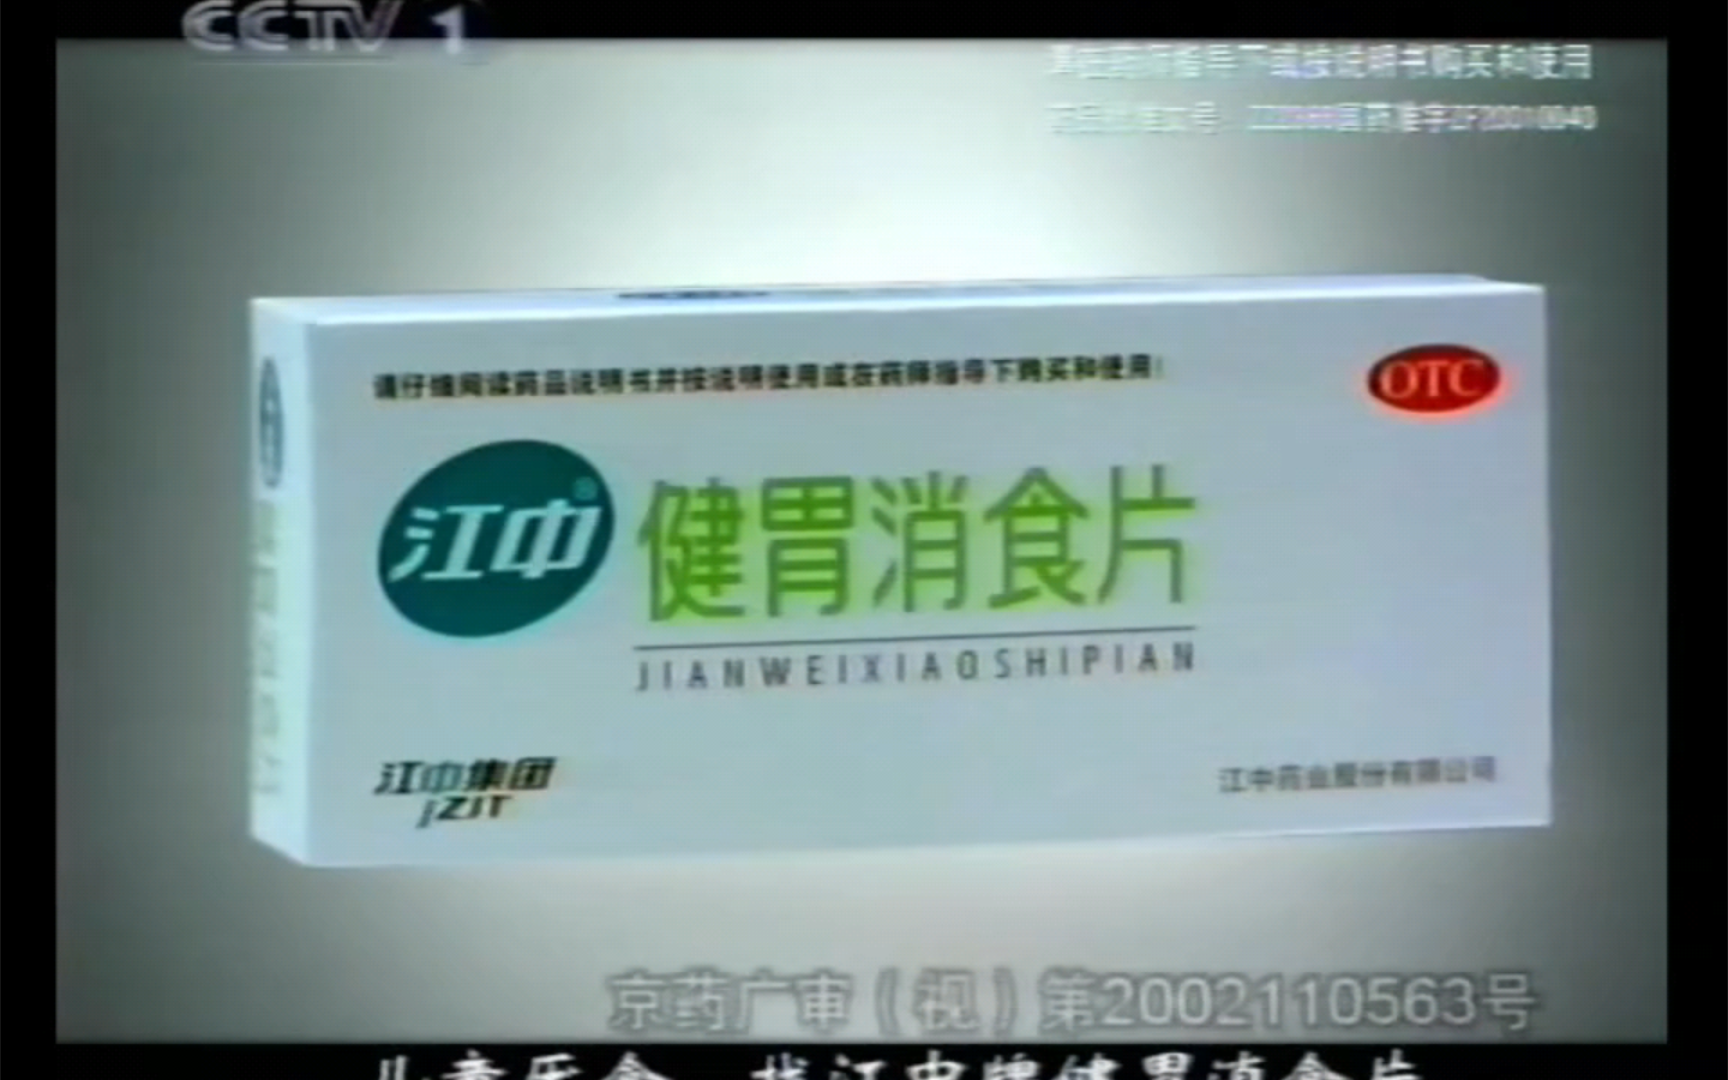 【广播电视|录像带】中央电视台(CCTV 1) 电视剧《世纪之约》之前的广告(2002.12)